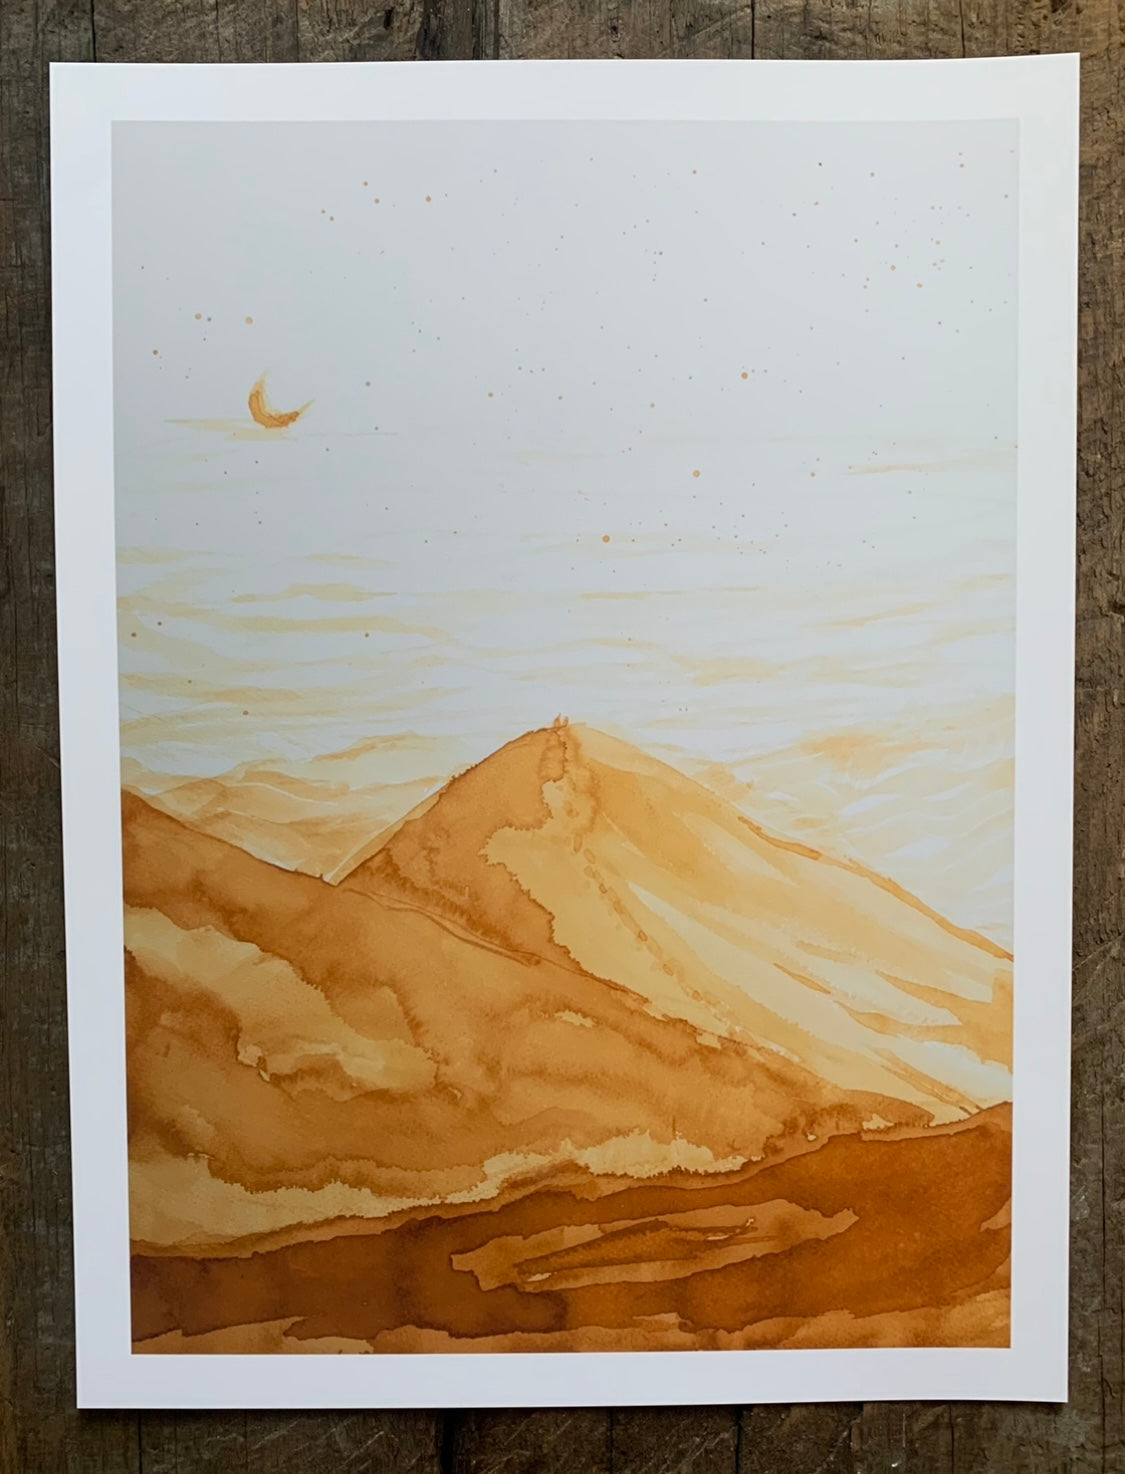  La rencontre lunaire au-delà des dunes / Impression Café